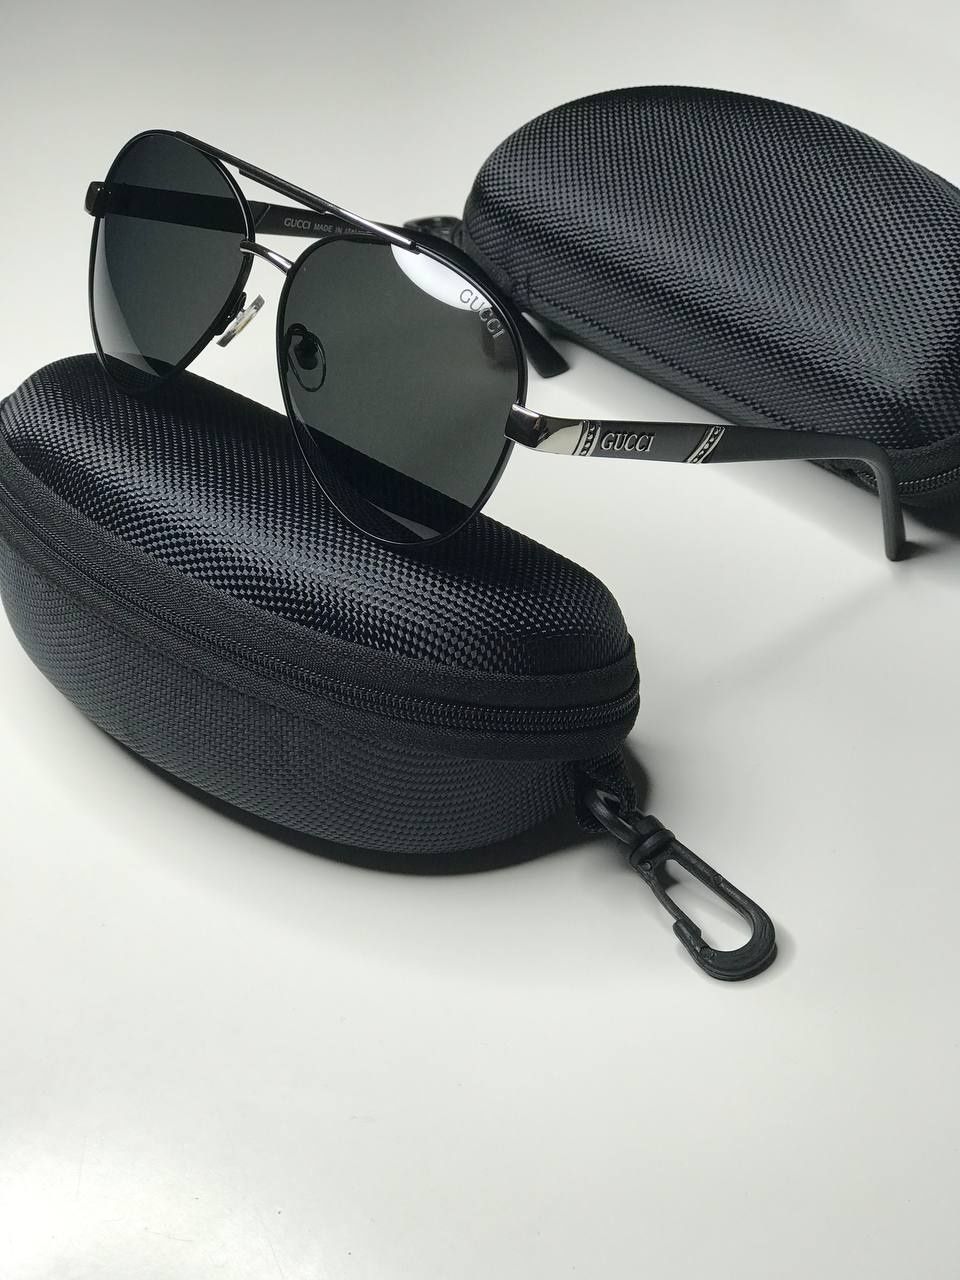 Сонцезахисні окуляри  GUCCI  Р 8007 Polarized, авіатори, окуляри гуччі